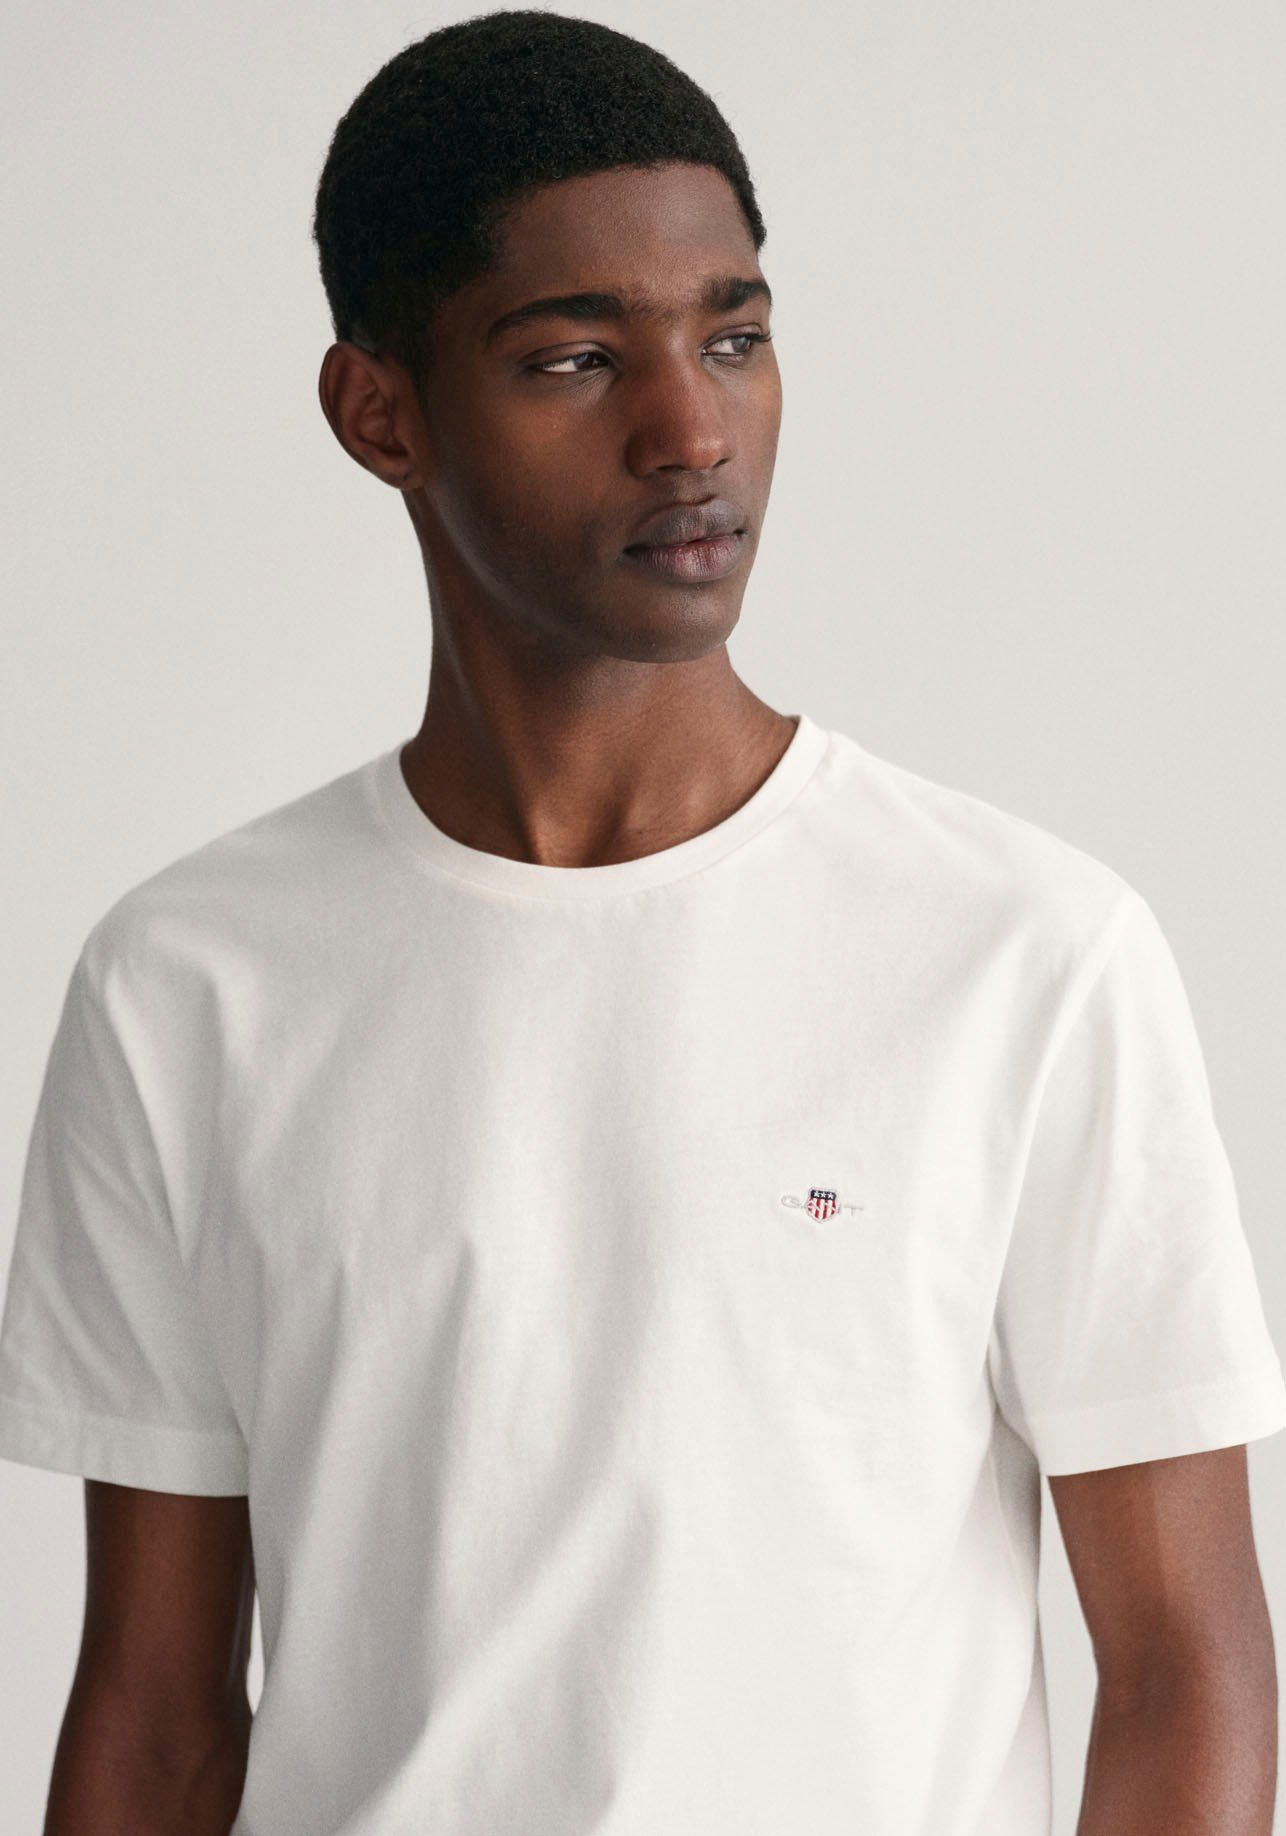 der white Logostickerei SHIELD T-SHIRT mit REG Brust T-Shirt Gant auf SS